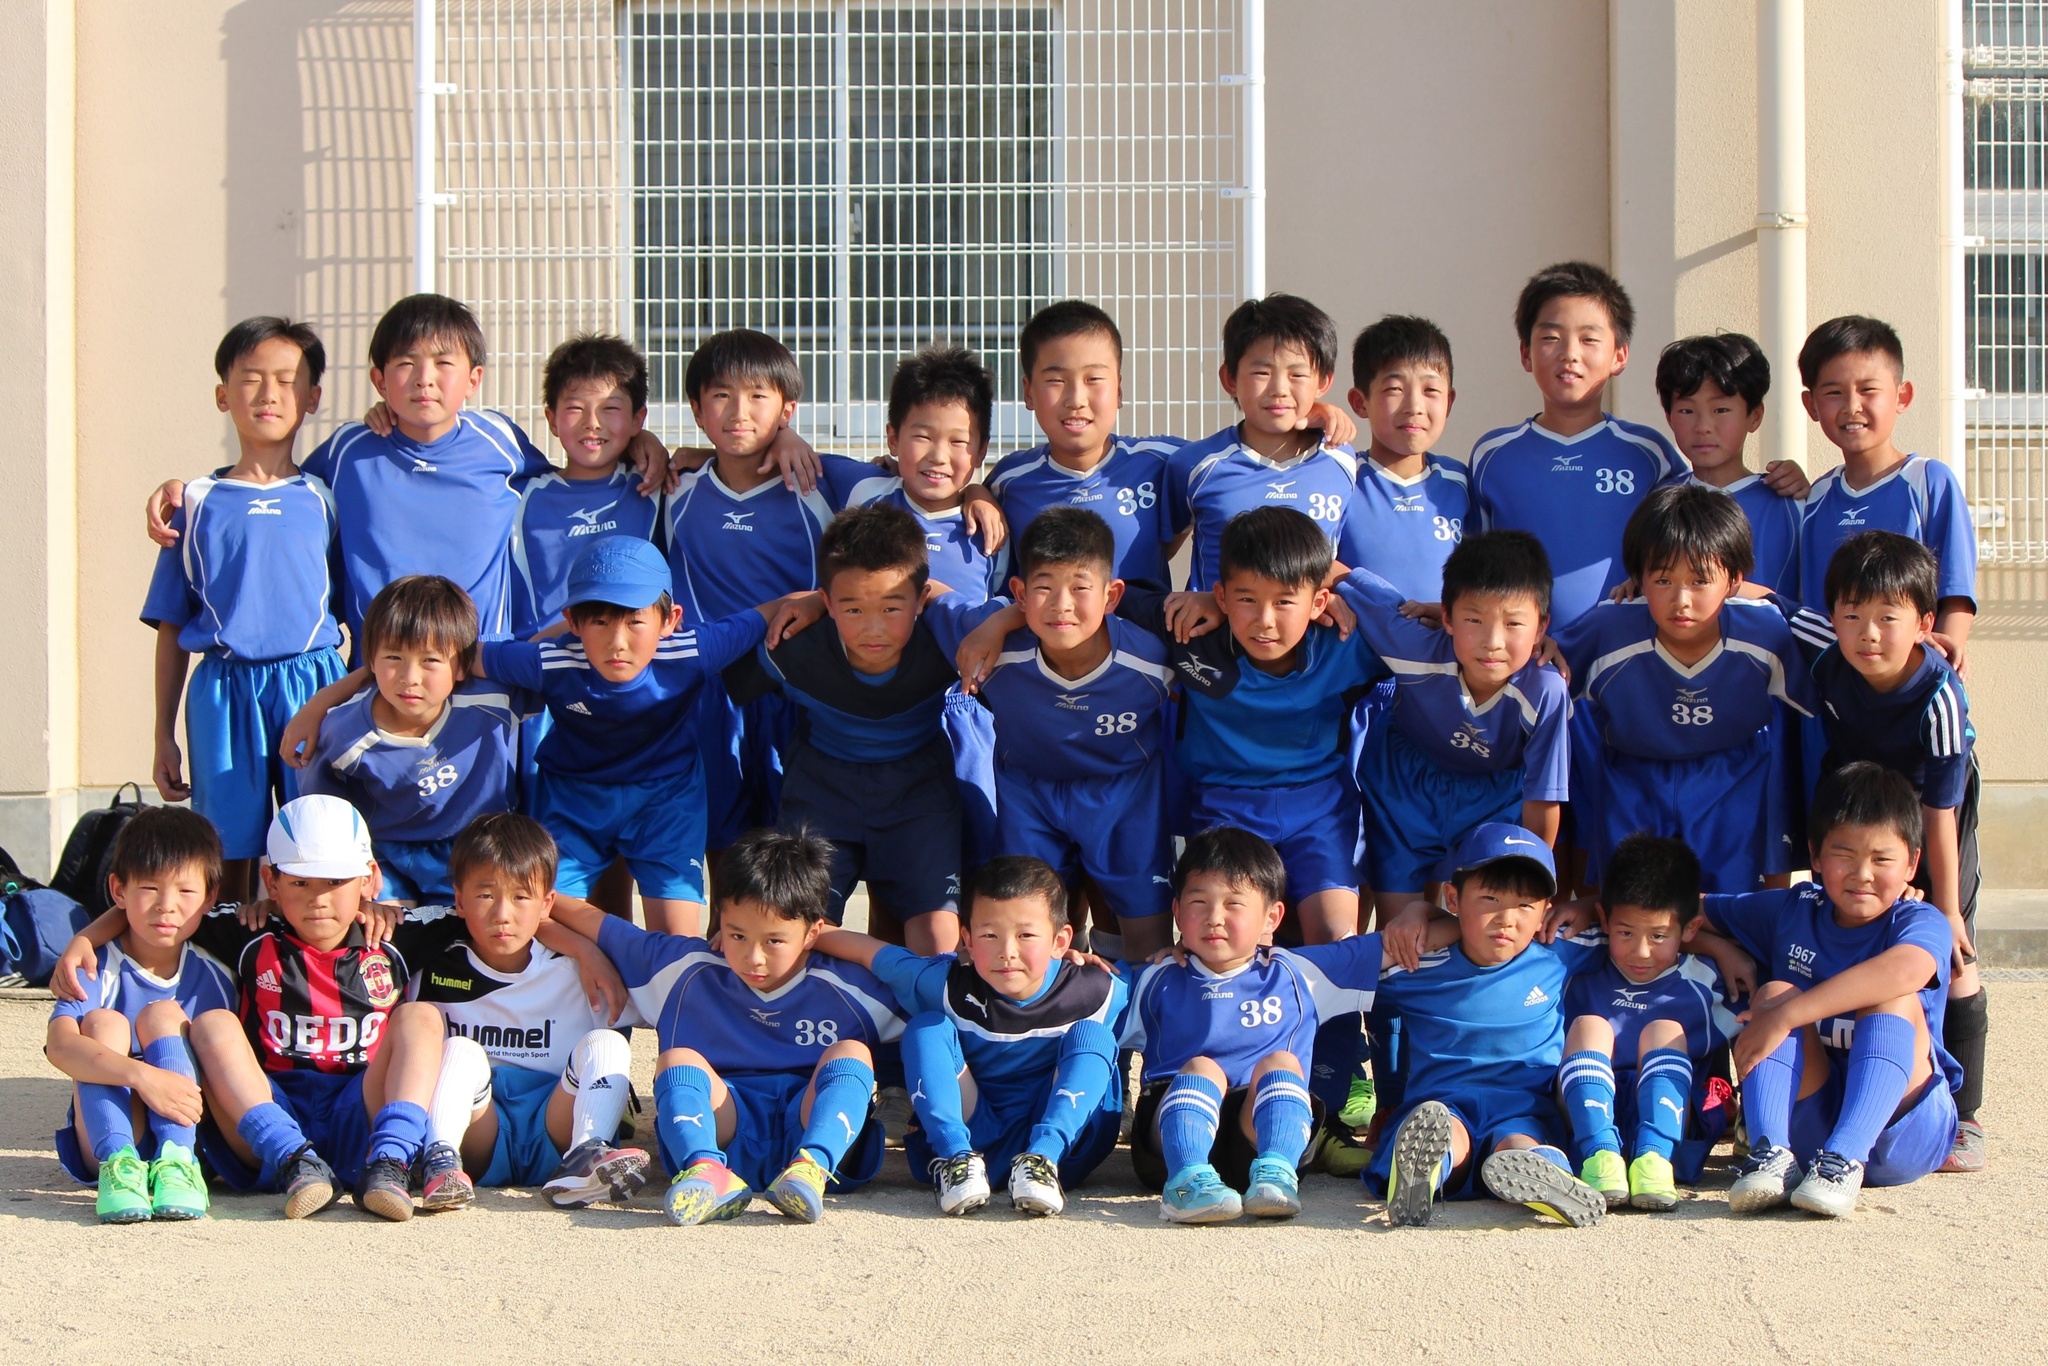 小学生チーム 一般社団法人和歌山県サッカー協会 公式ホームページ